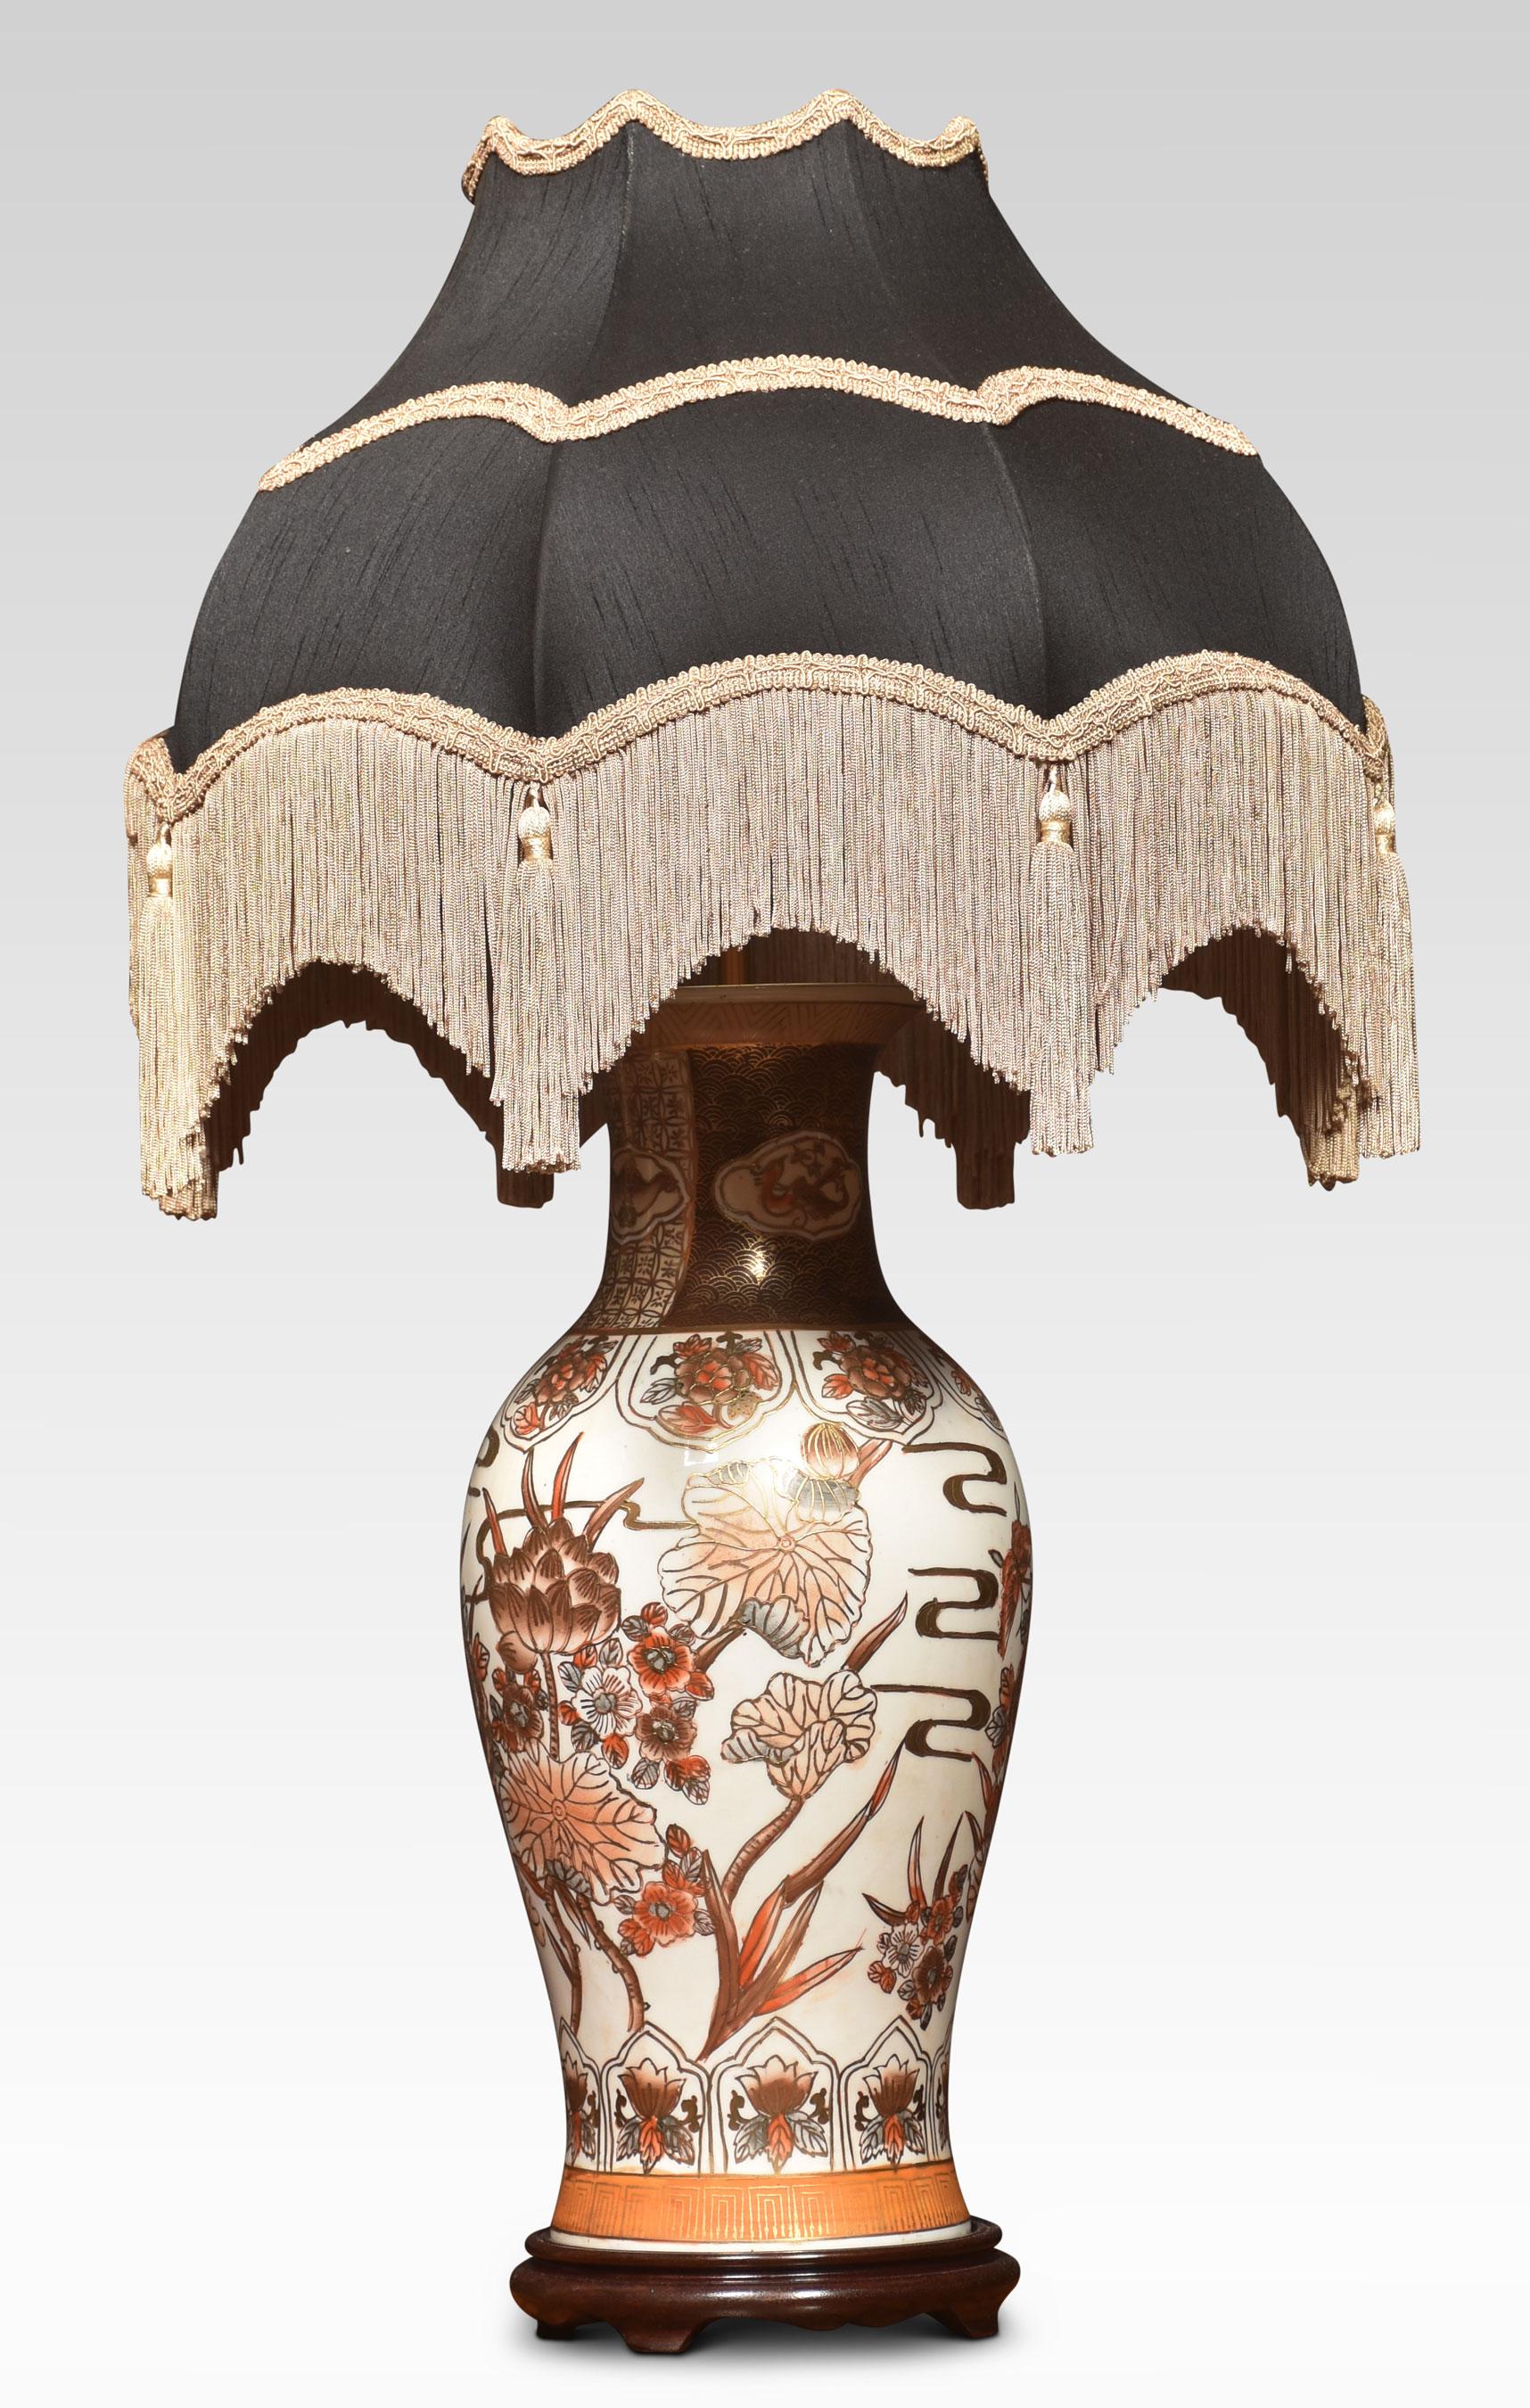 Lampe-vase japonaise en porcelaine de Satsuma de forme balustre reposant sur une base en bois. L'abat-jour n'est pas inclus.
Dimensions
Hauteur 23 pouces
Largeur 8,5 pouces
Profondeur 8,5 pouces.